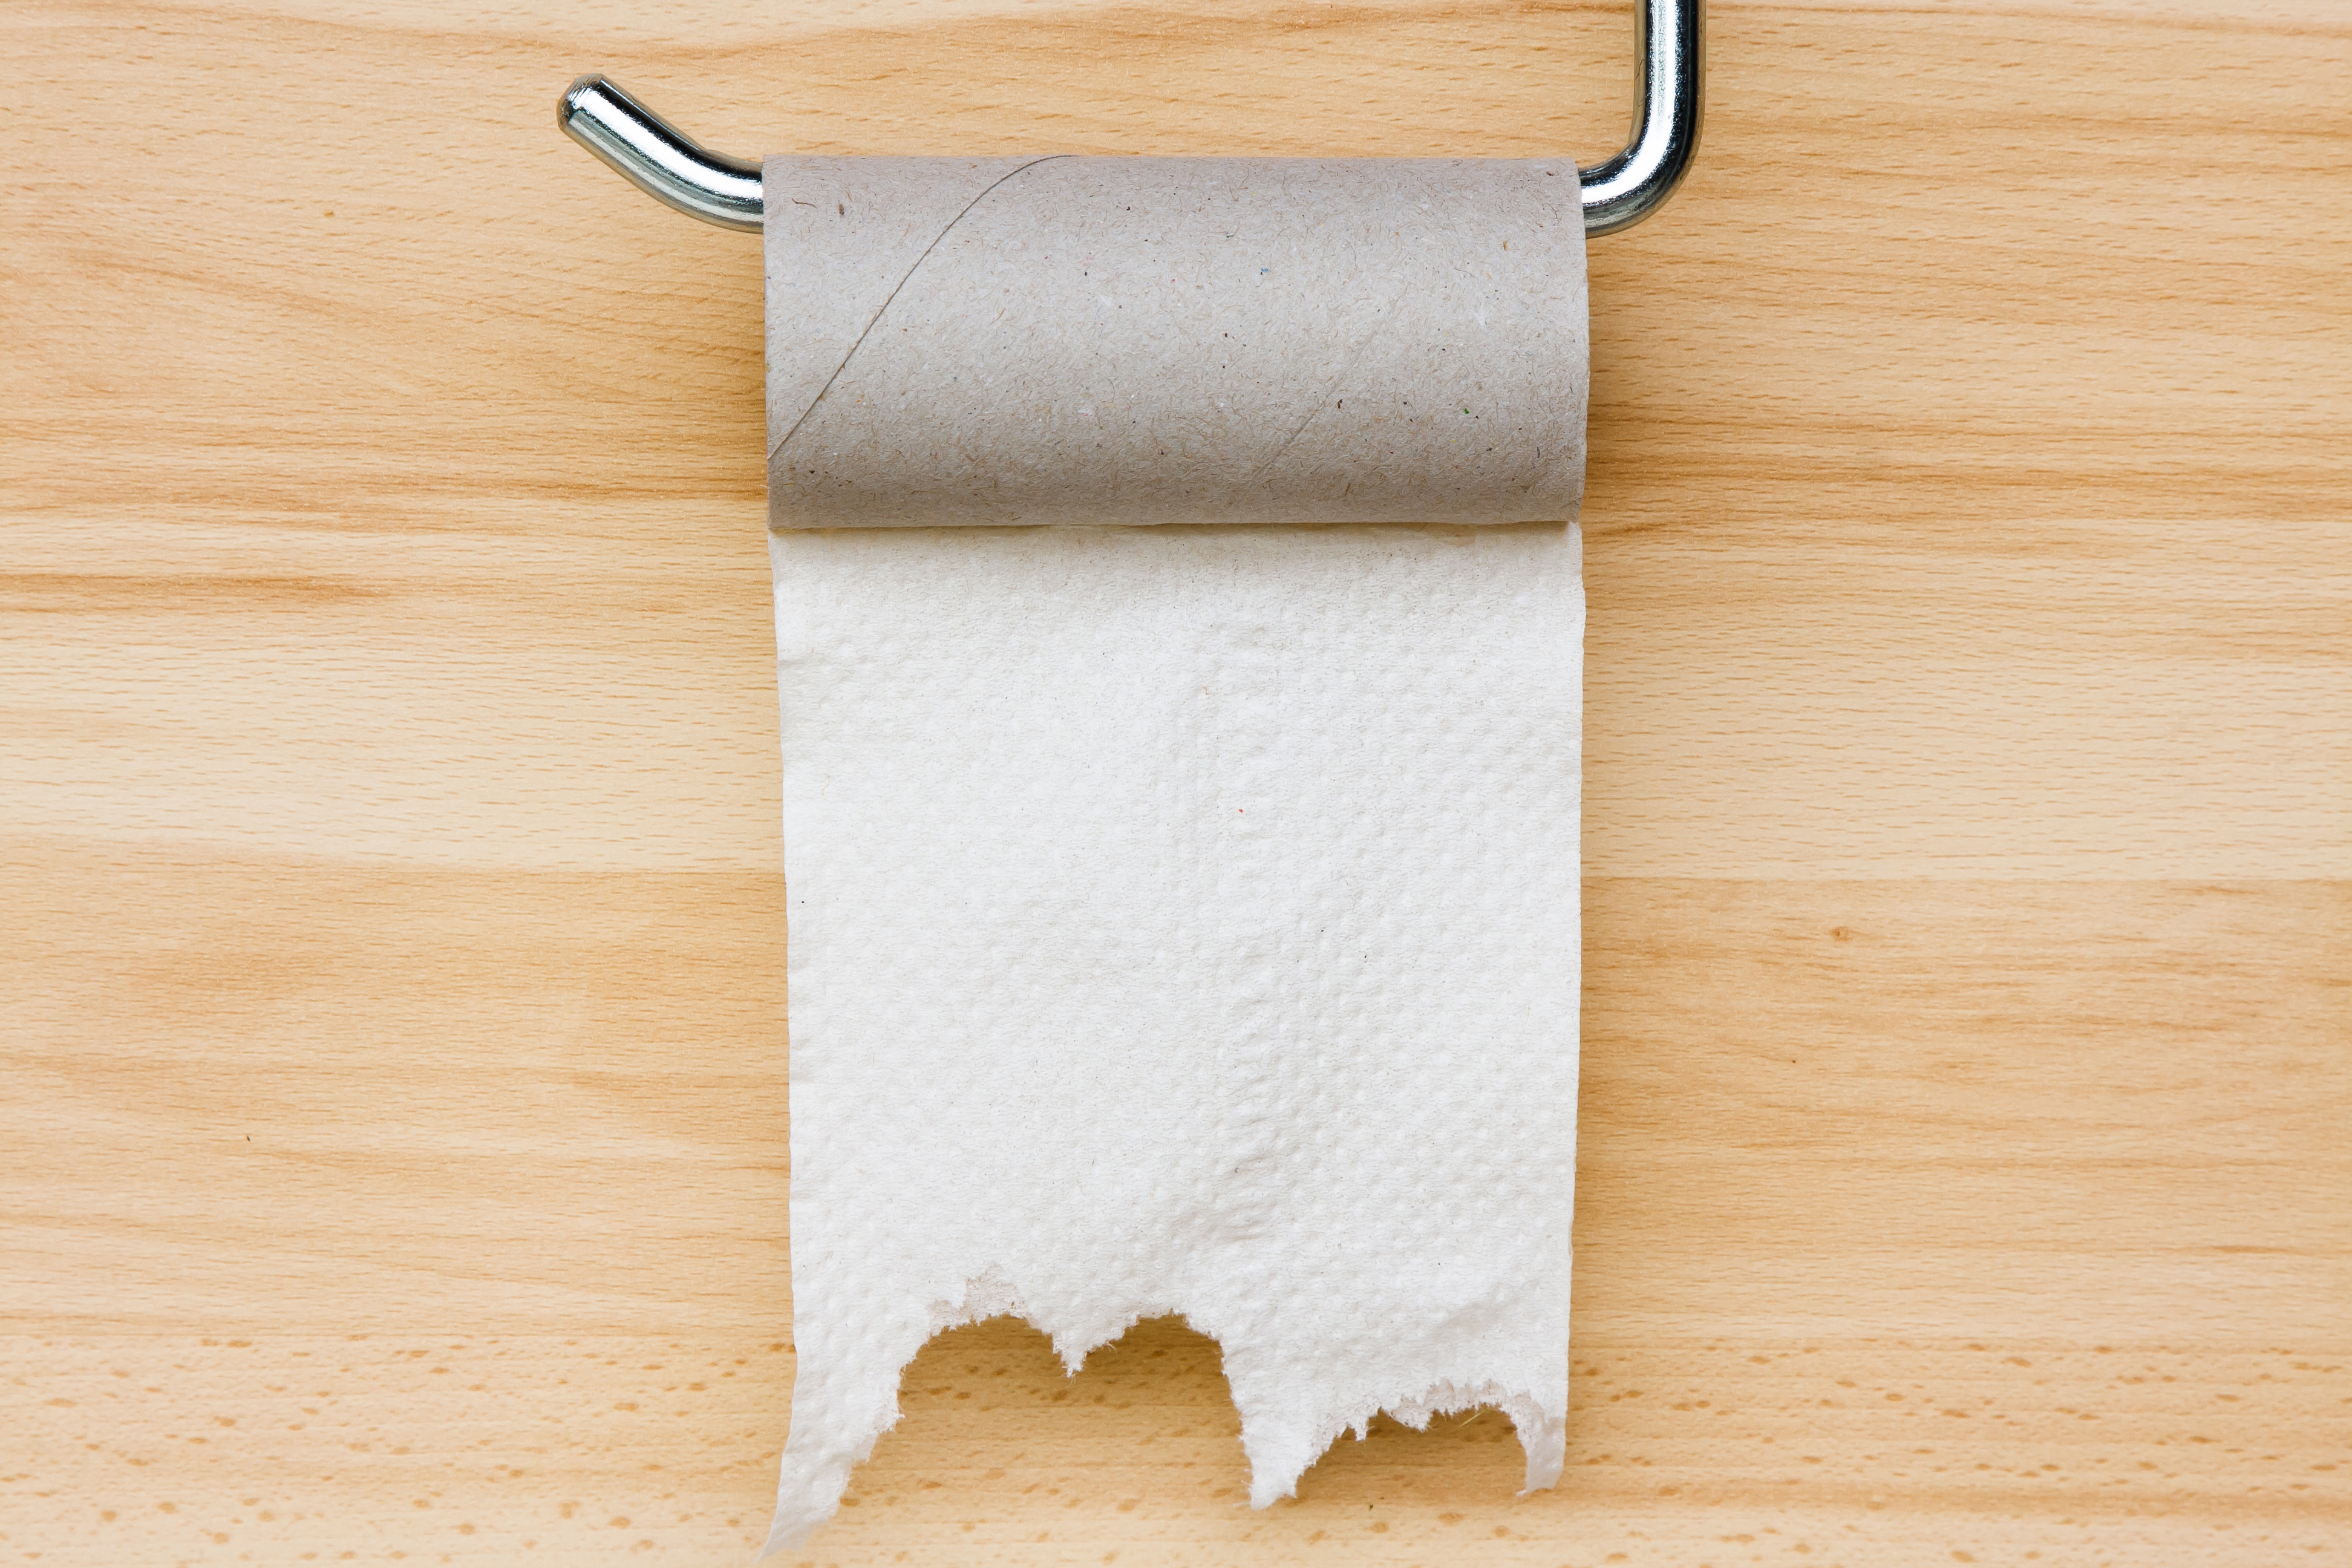 10 нестандартных способов использования втулок от бумажных полотенец и рулонов туалетной бумаги в доме